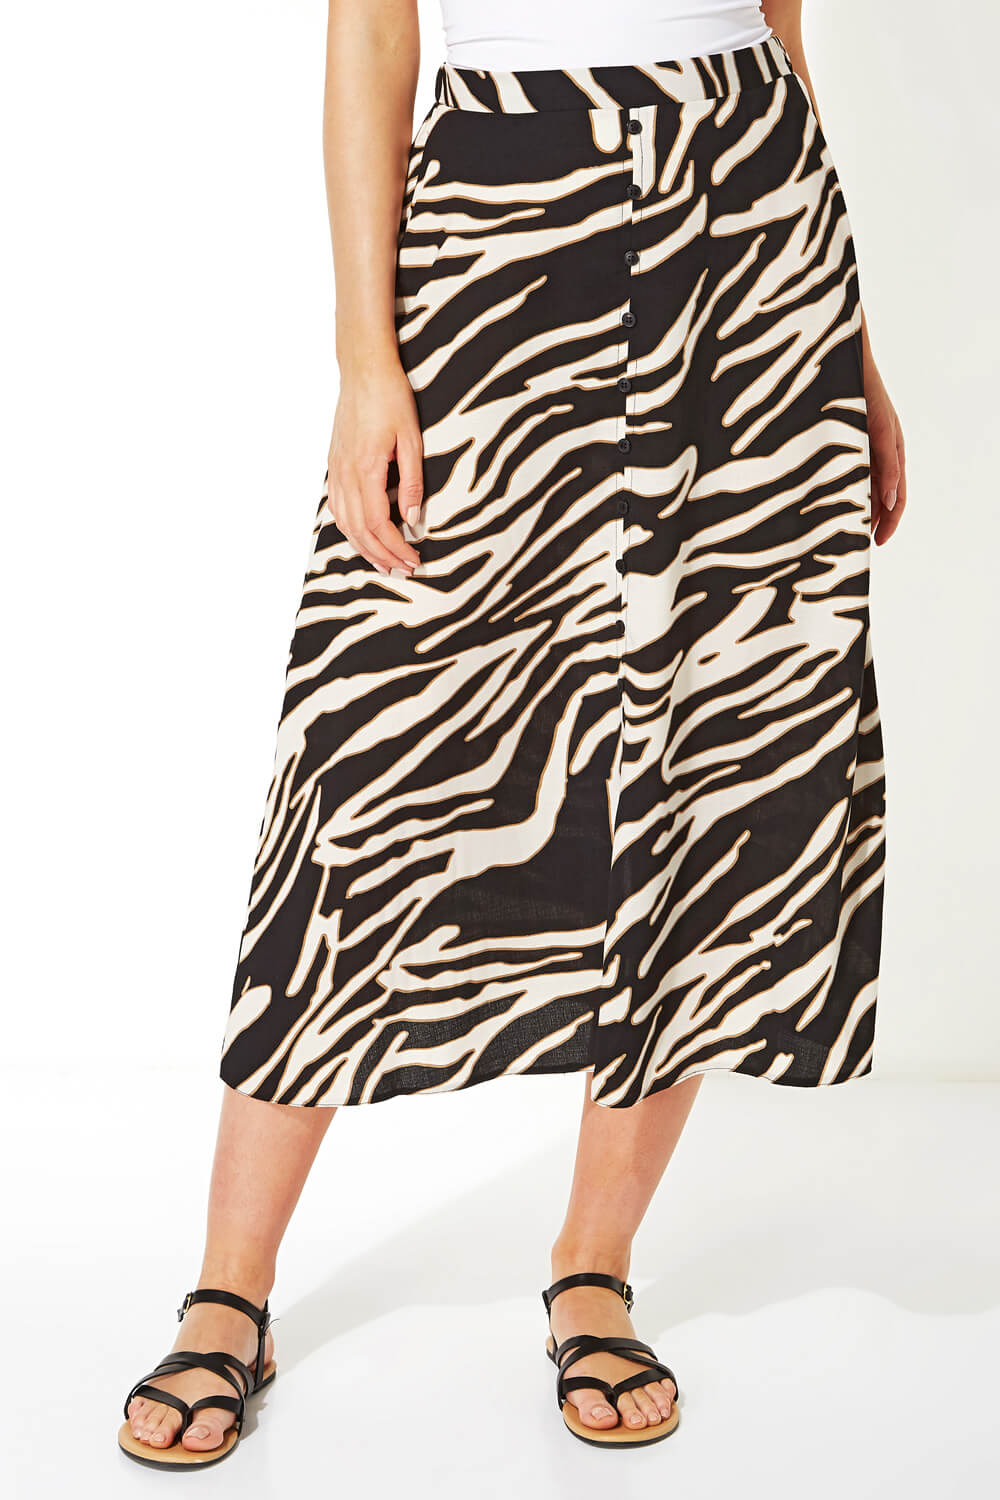 Zebra Print Skirt